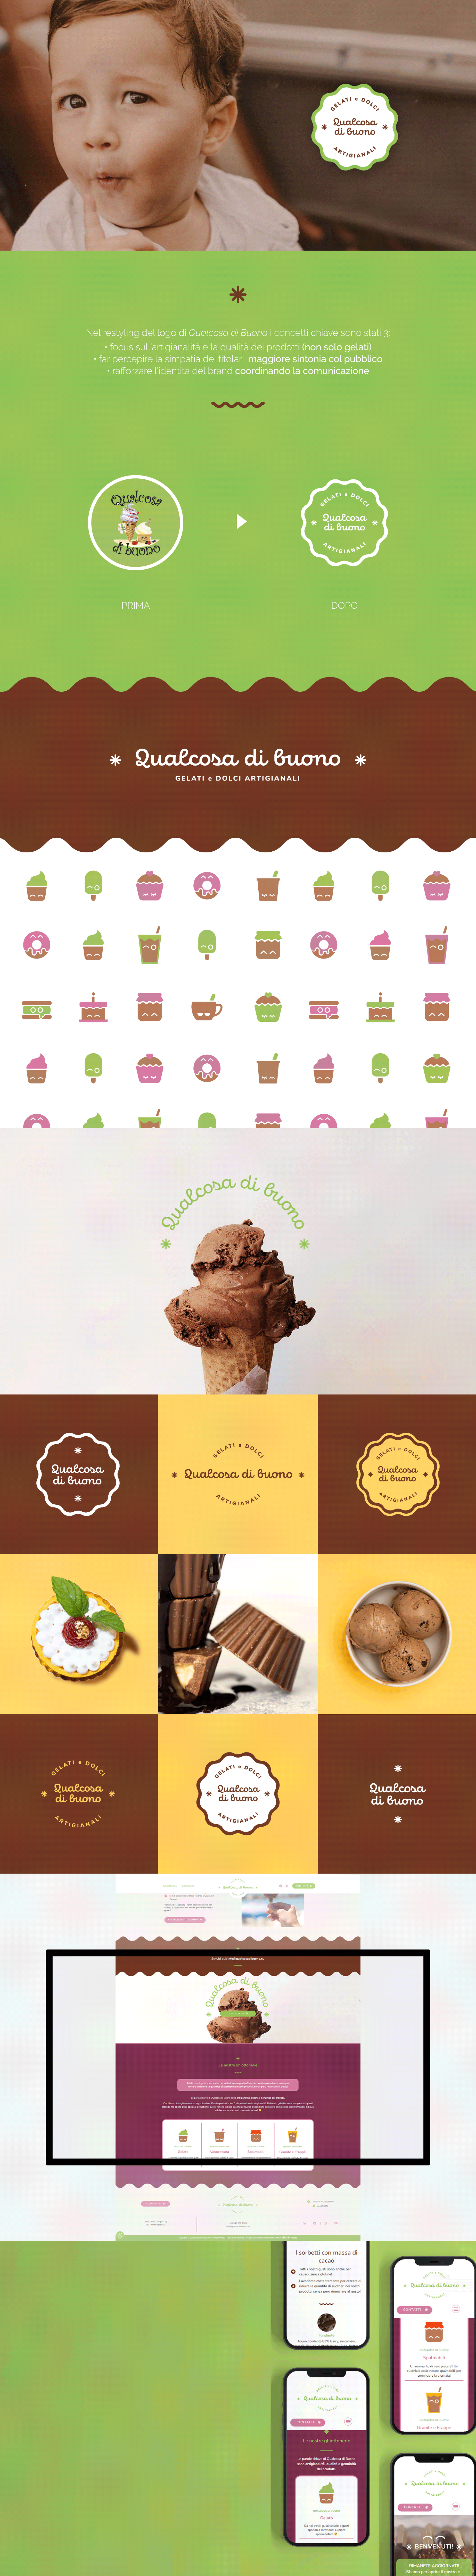 Qualcosa di buono thinkuplab gelateria pasticceria genova - logo design progettazione grafica sito web